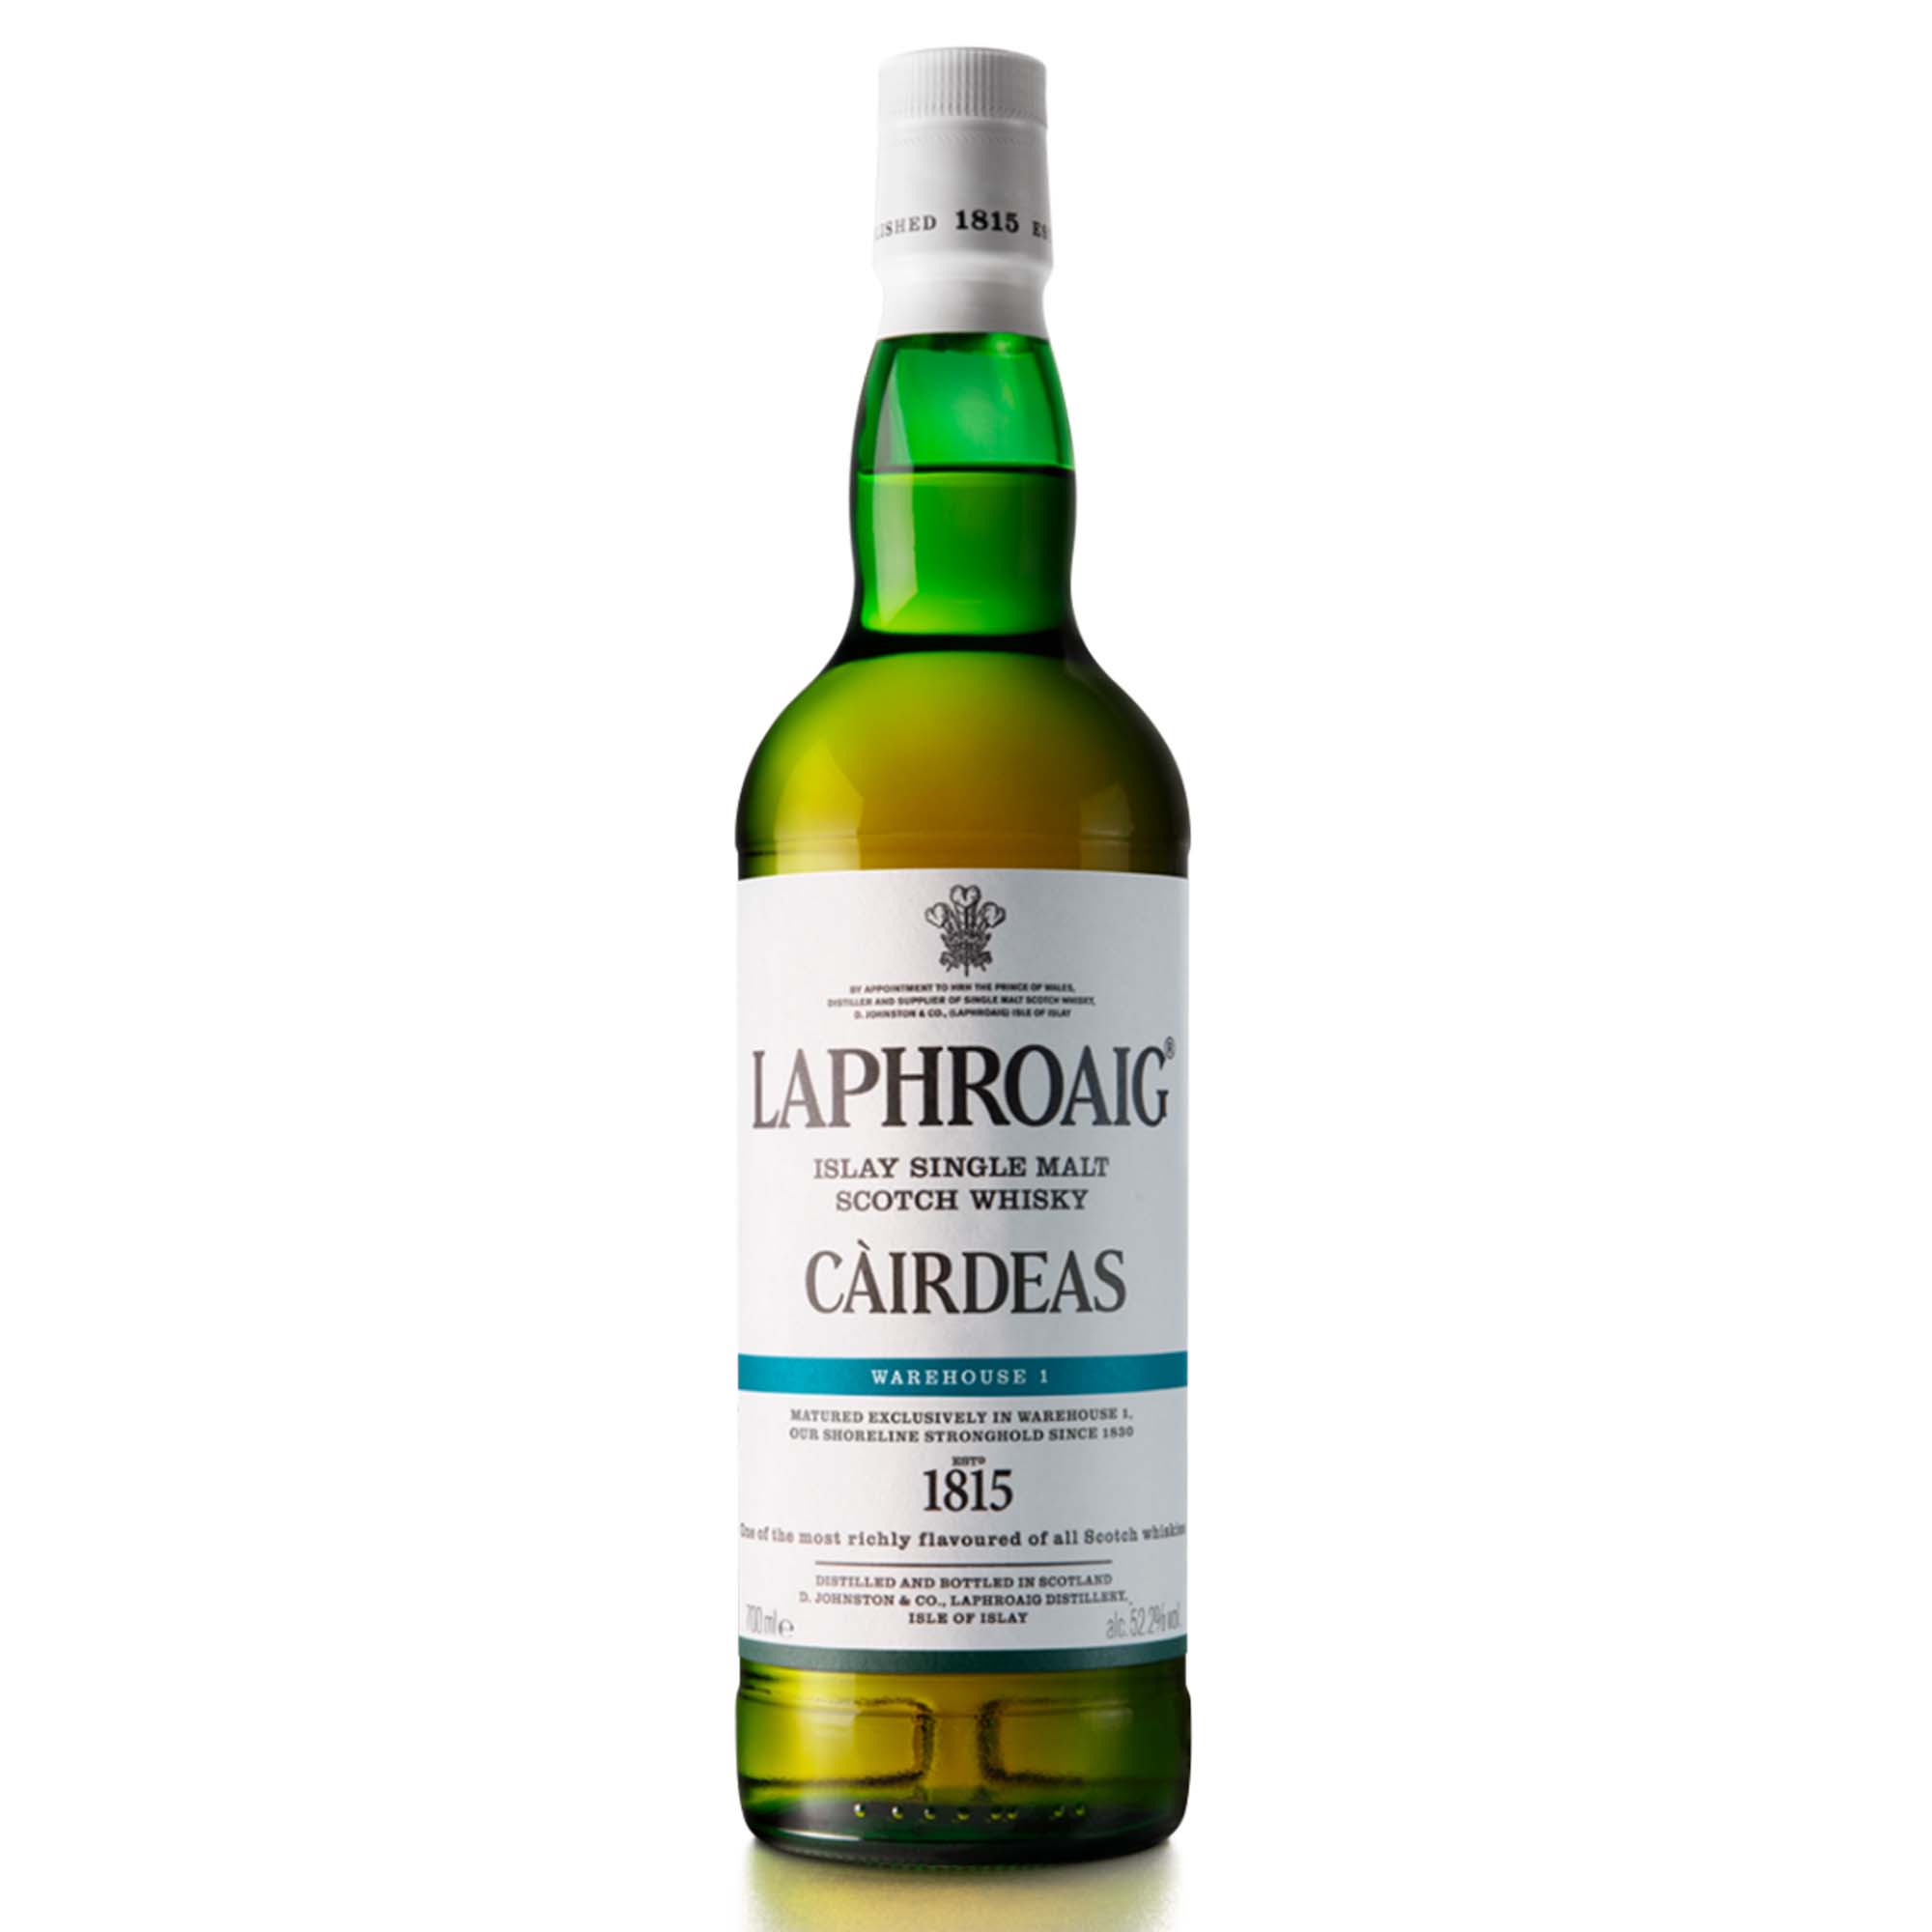 Laphroaig Càirdeas 2022 Warehouse 1 Scotch